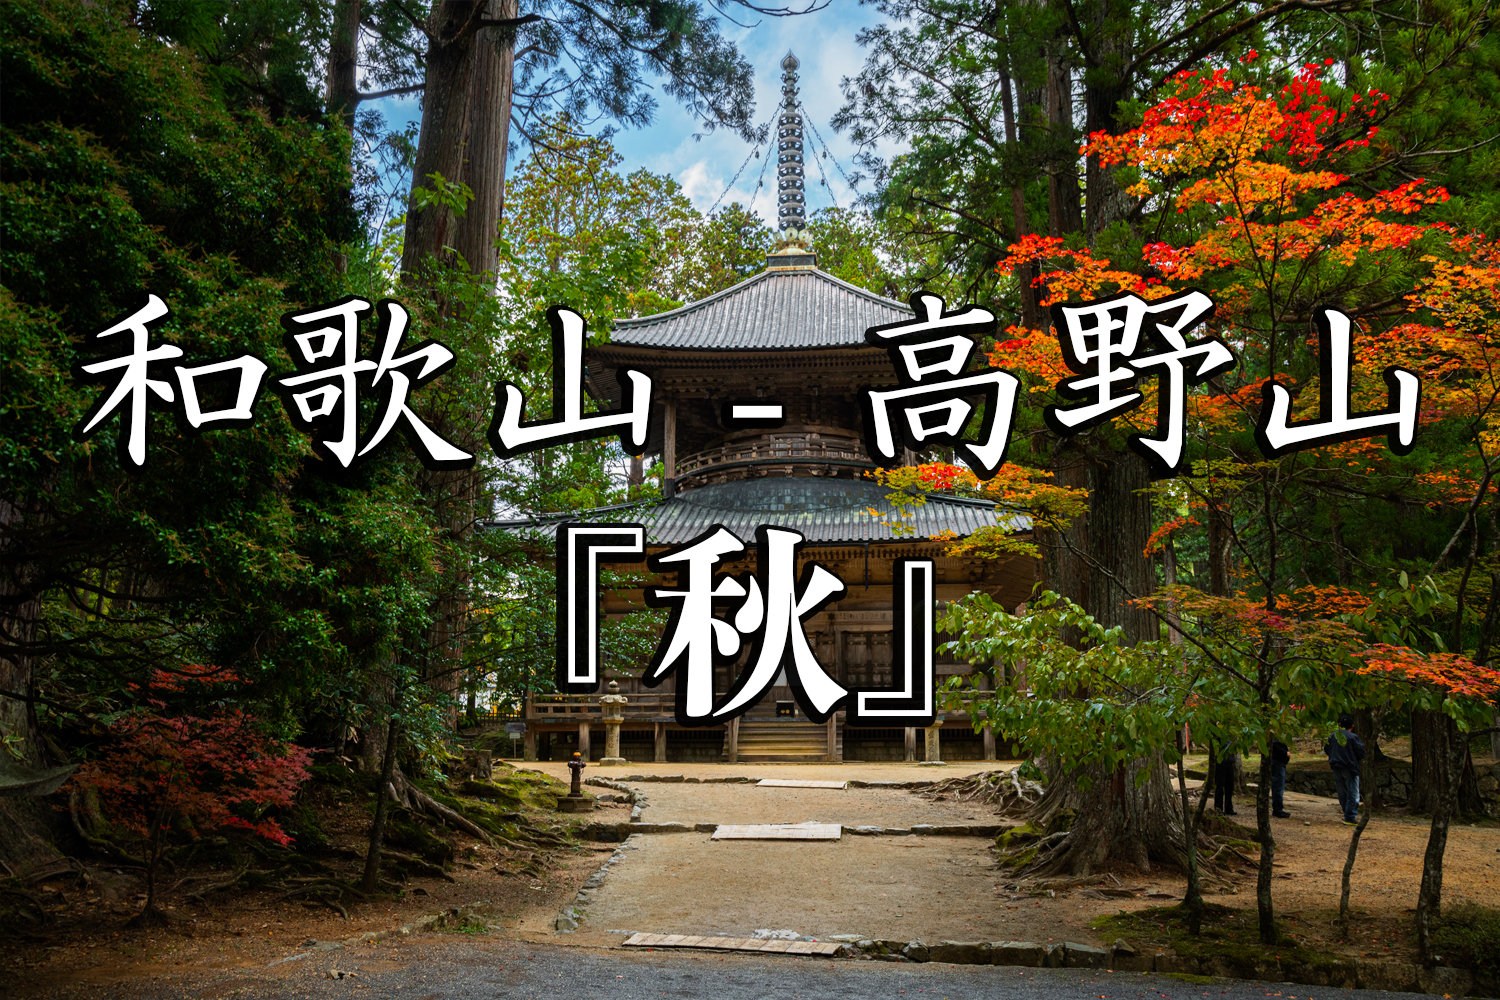 和歌山県 高野山 関西でいち早く紅葉が見れる秋におすすめの写真スポット 撮影した写真の紹介 アクセス情報など 写真や映像で紹介する関西 近畿の絶景カメラ 観光スポット